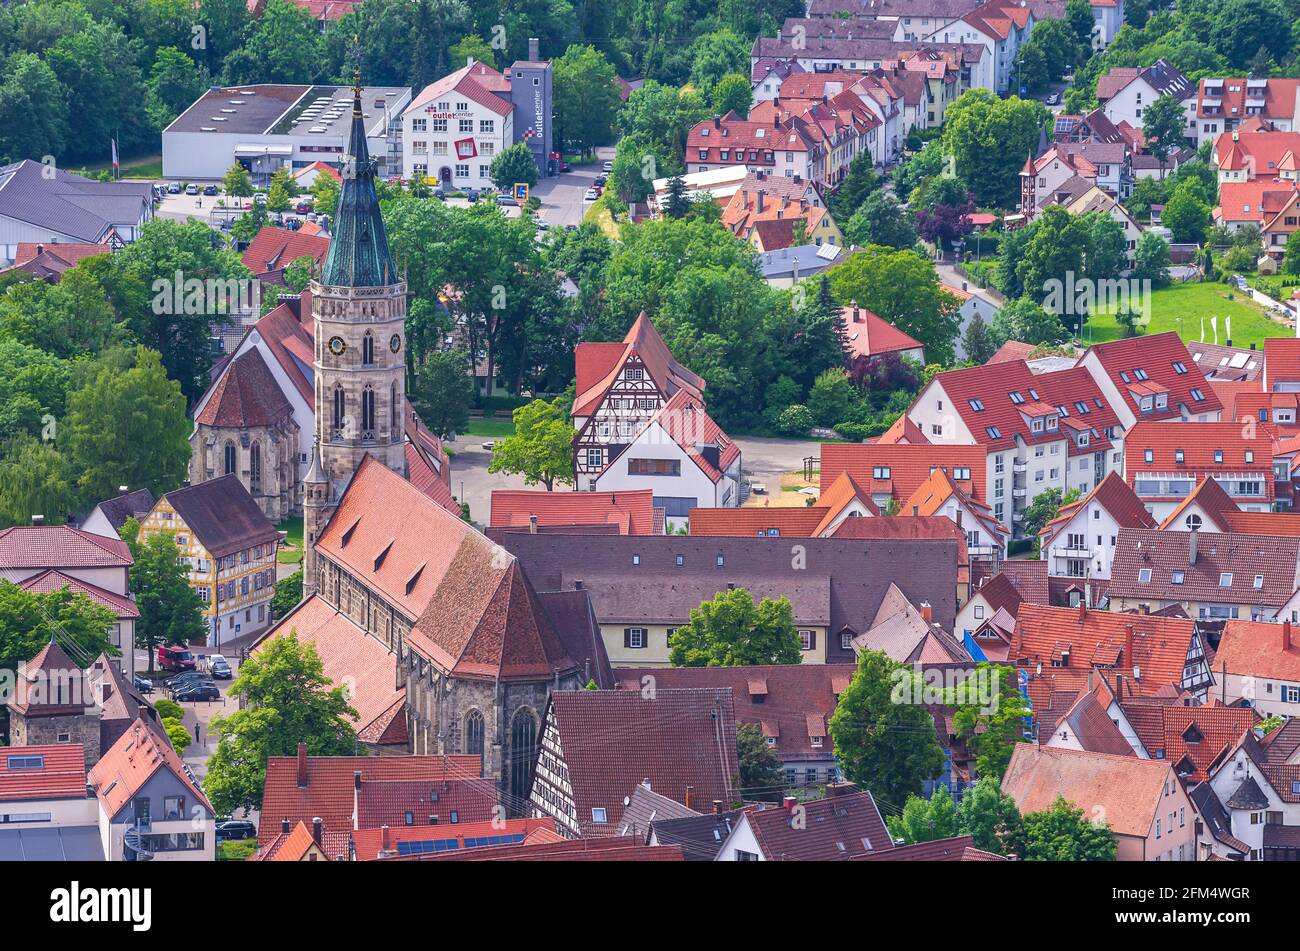 Bad Urach, Baden-Württemberg, Deutschland - 6. Juni 2014: Blick von oben auf die Kleinstadt Bad Urach am Fuße der Schwäbischen Alb Stockfoto